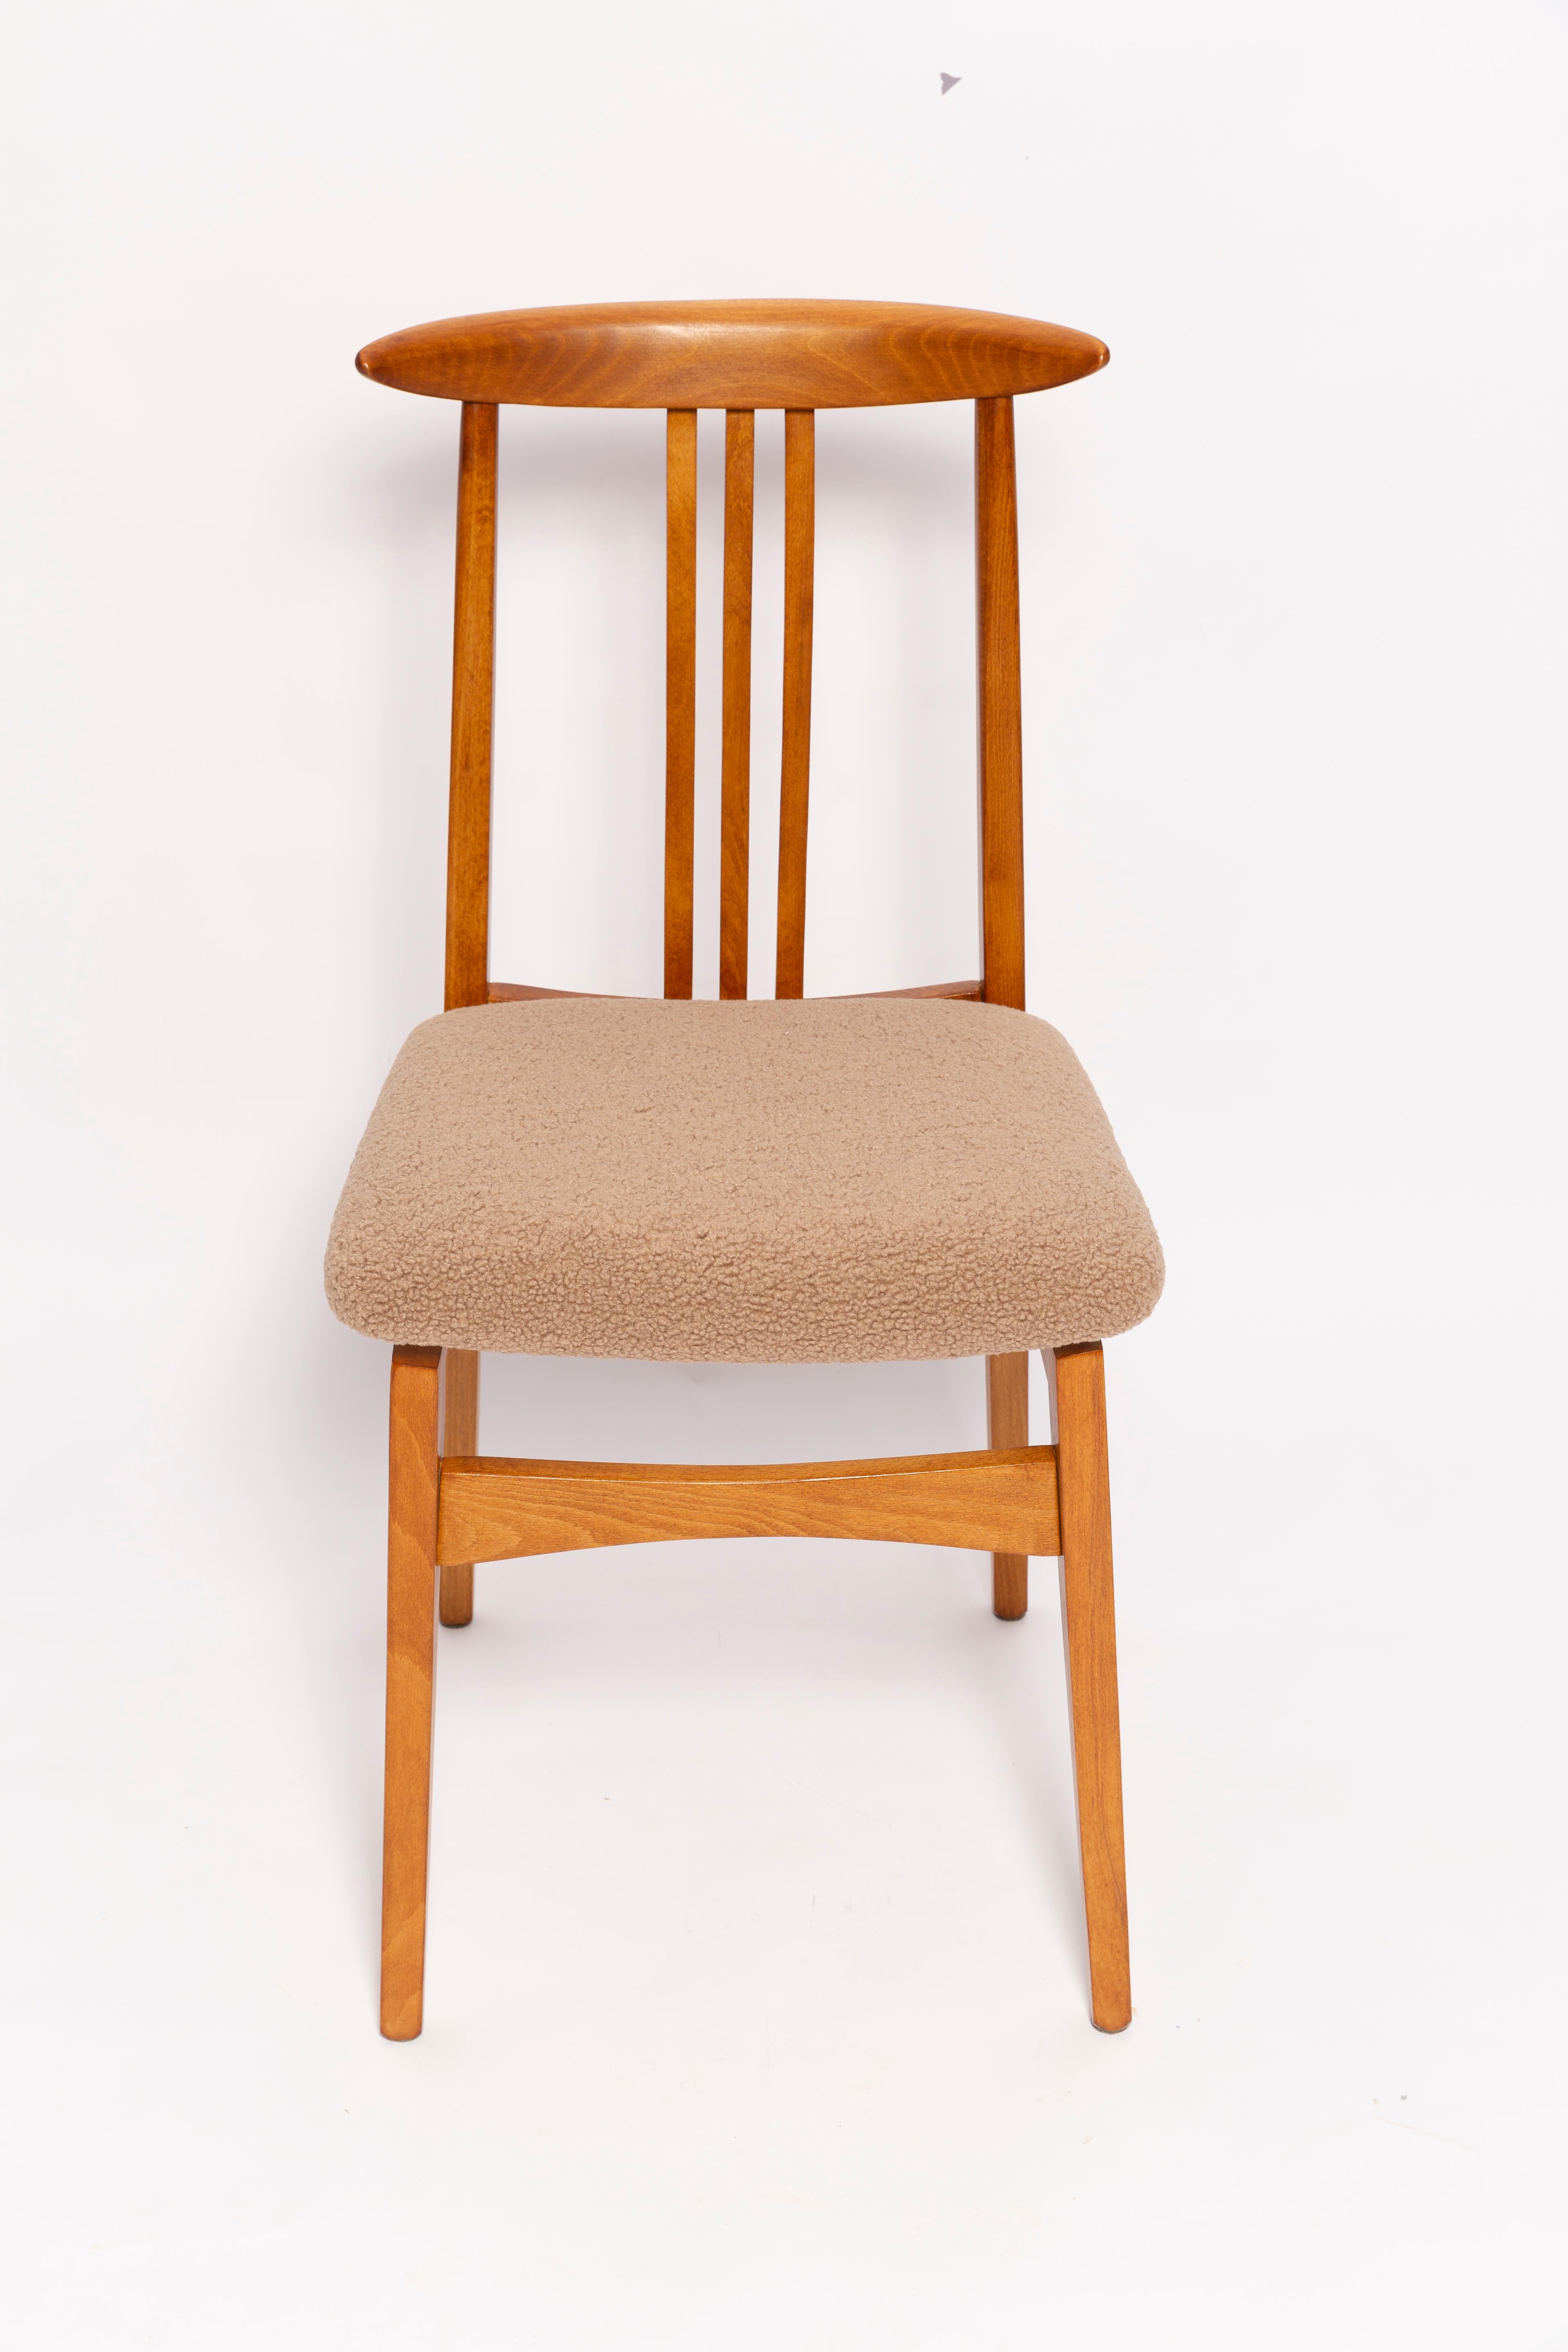 Bouclé Six Mid-Century Latte Boucle Chairs, Medium Wood, M. Zielinski, Europe 1960s For Sale